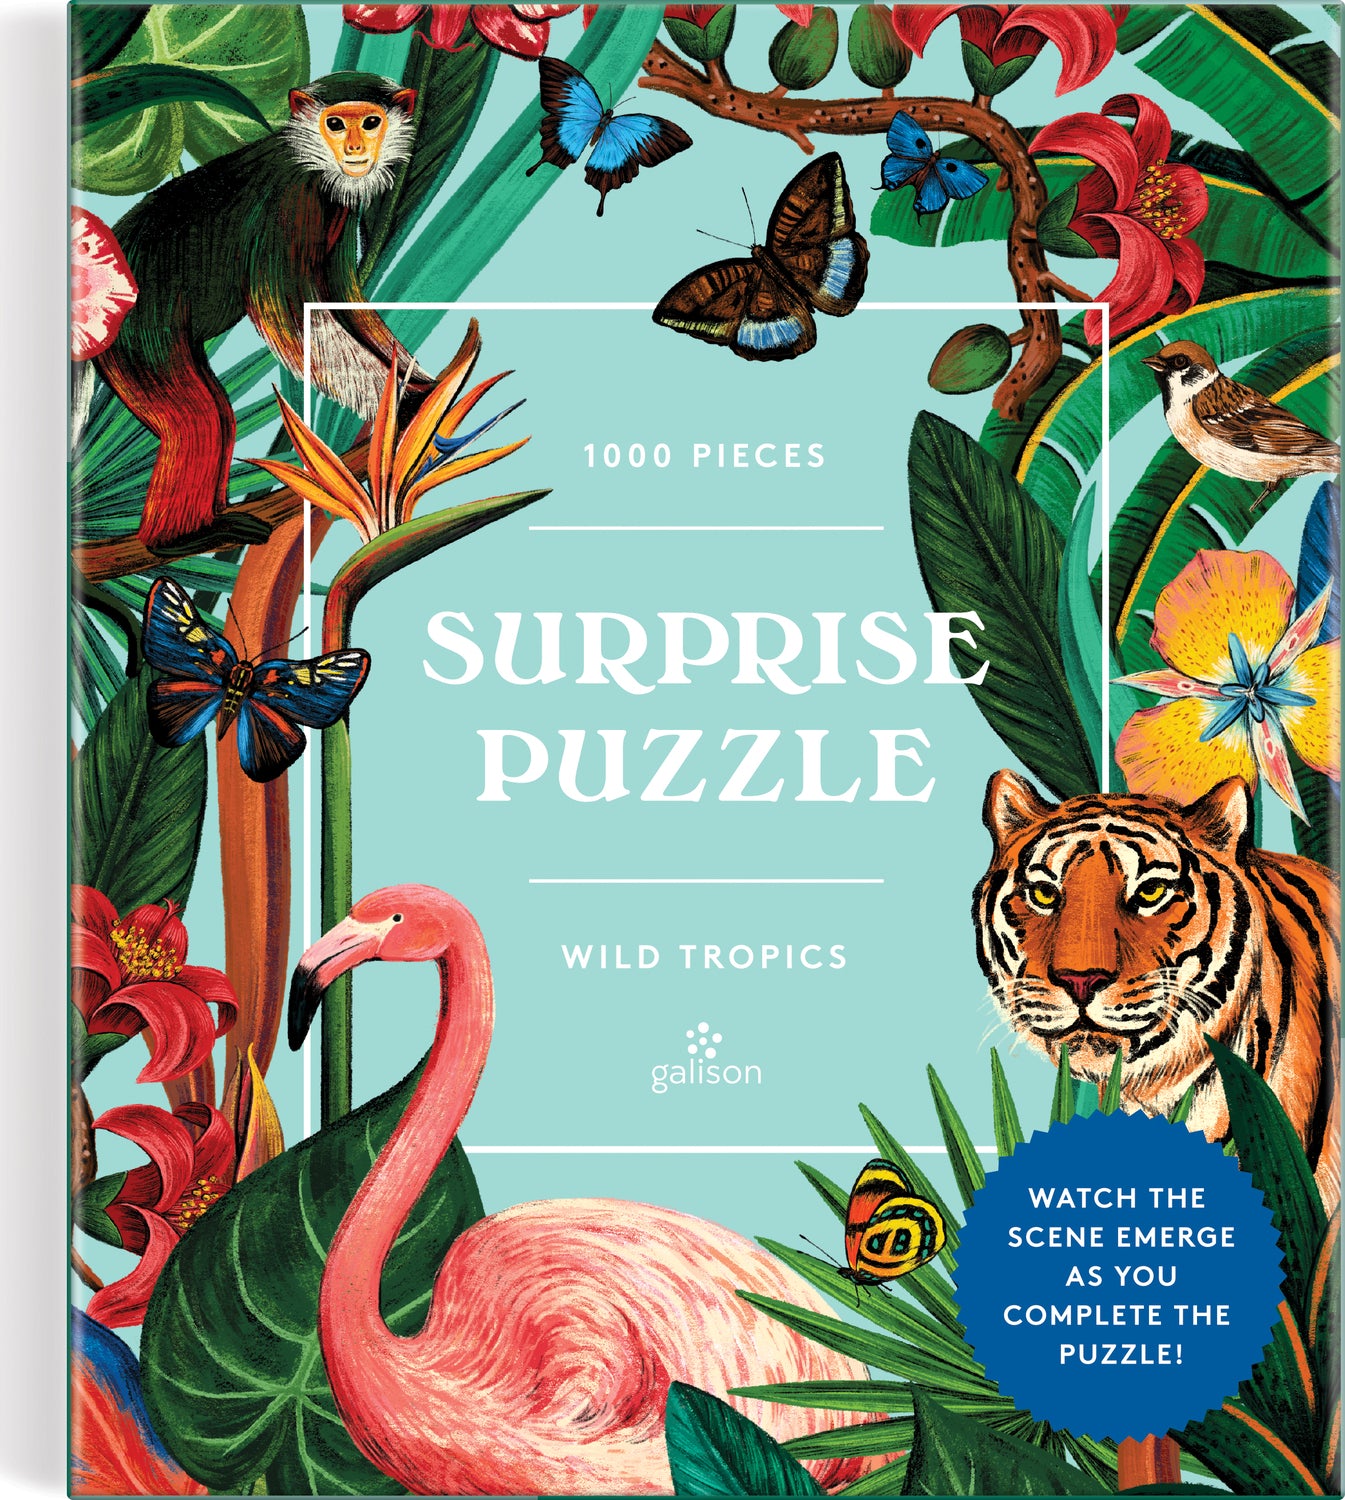 Wild Tropics Suprise Puzzle